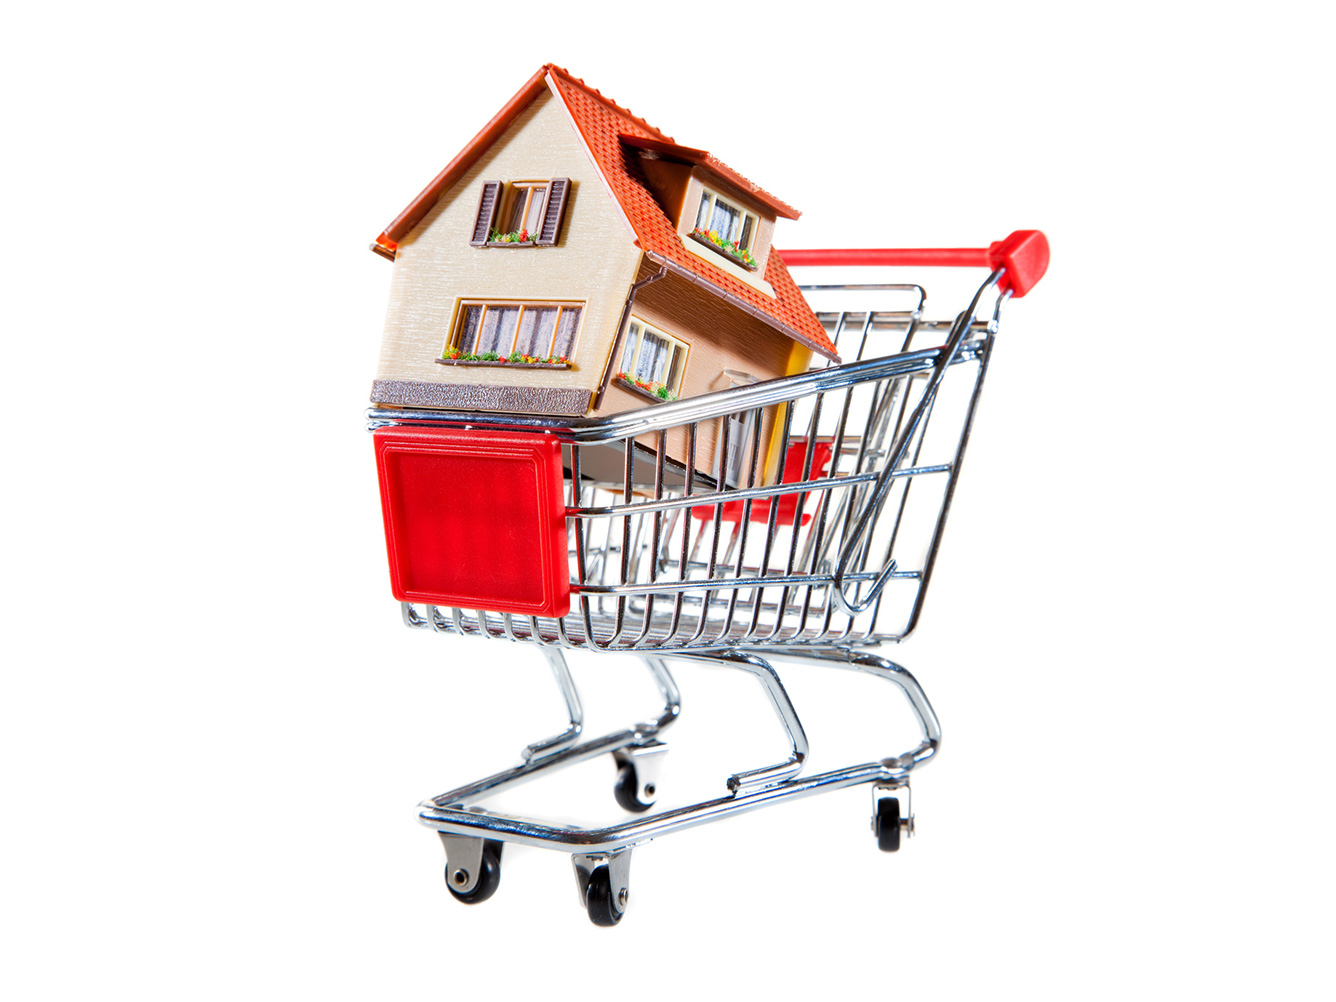 Jornada de Compra do consumidor imobiliário – As 5 etapas para vender um imóvel